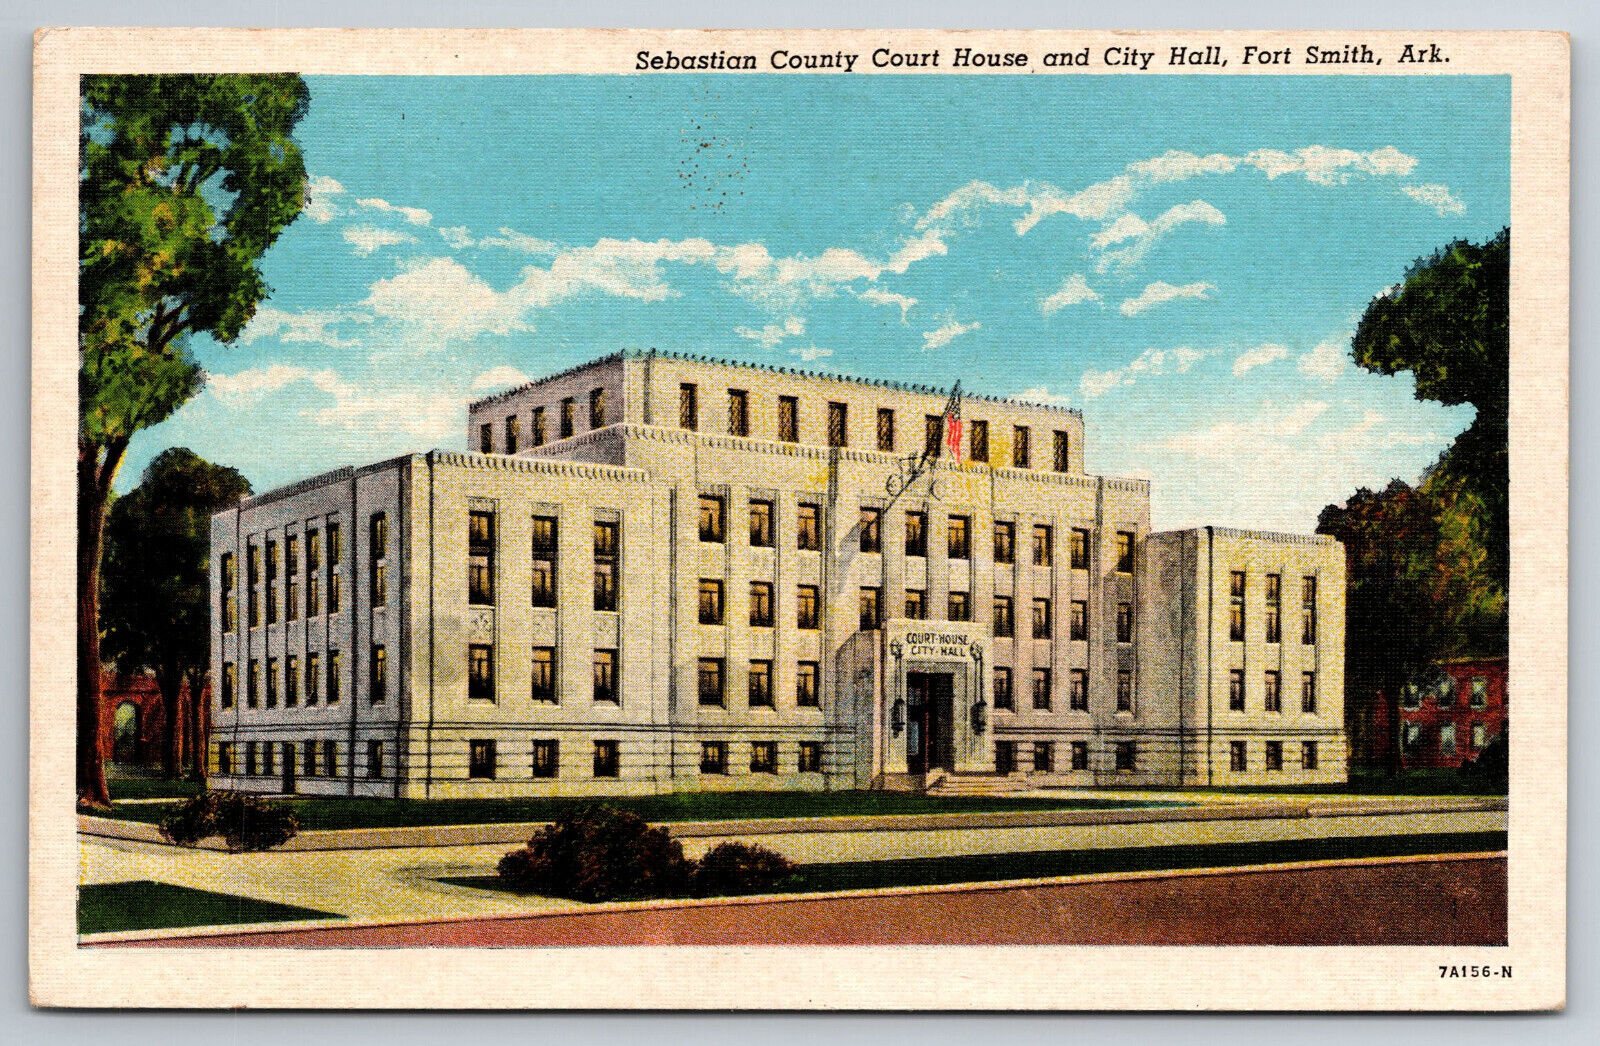 Vintage Postcard AR Fort Smith Sebastian County Court House City Hall